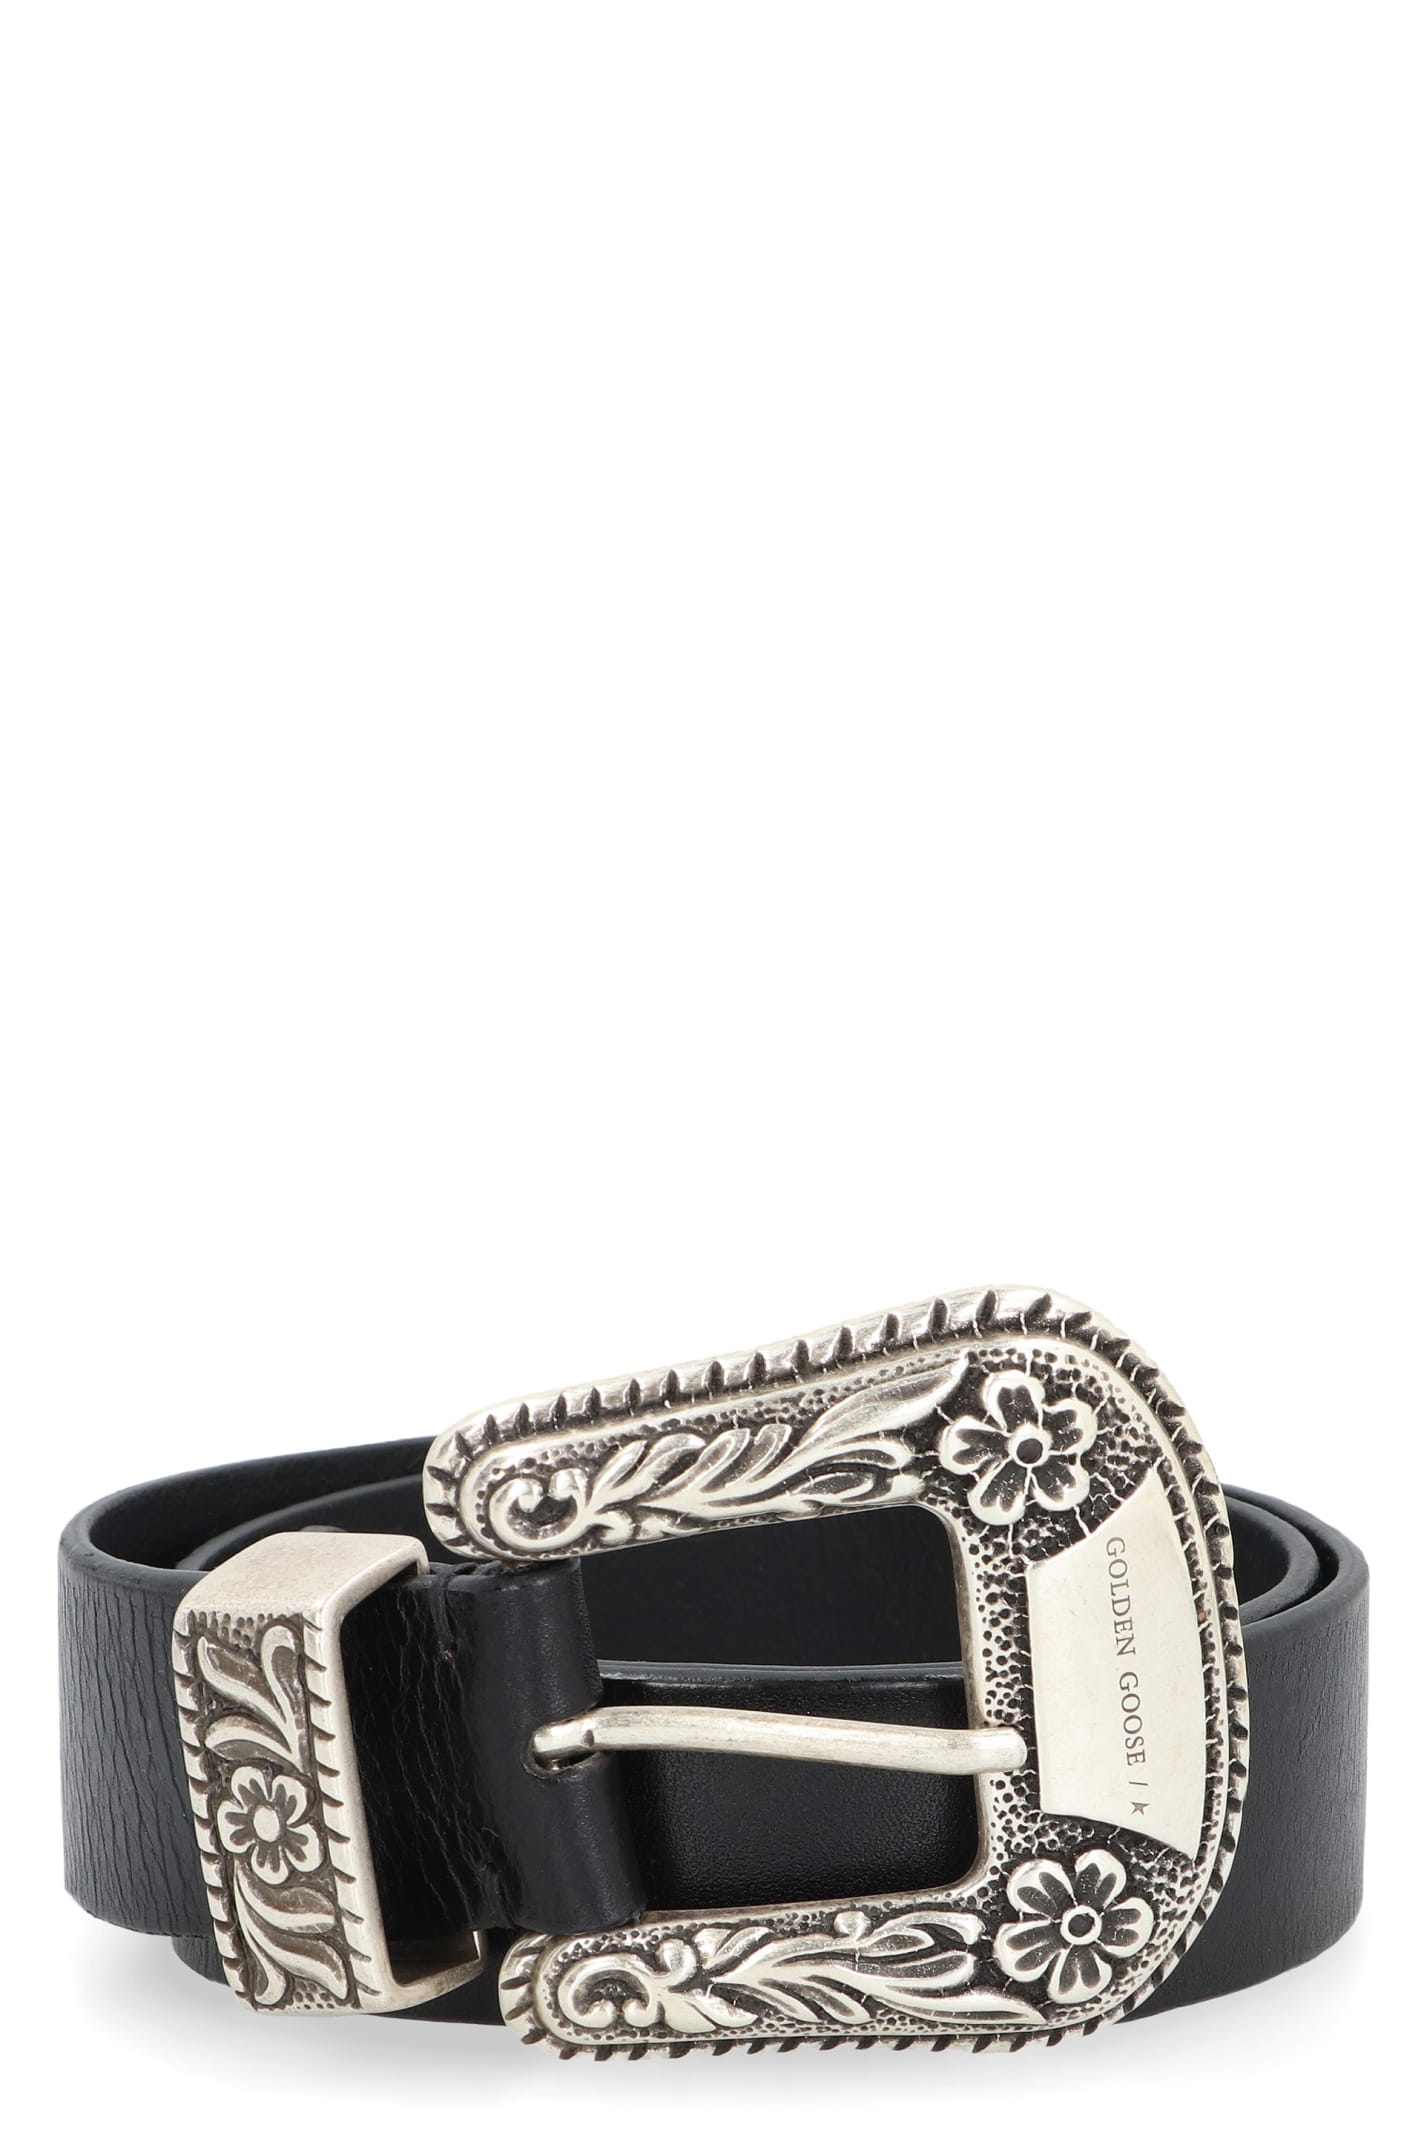 Shop Golden Goose Lace Leather Belt In Black